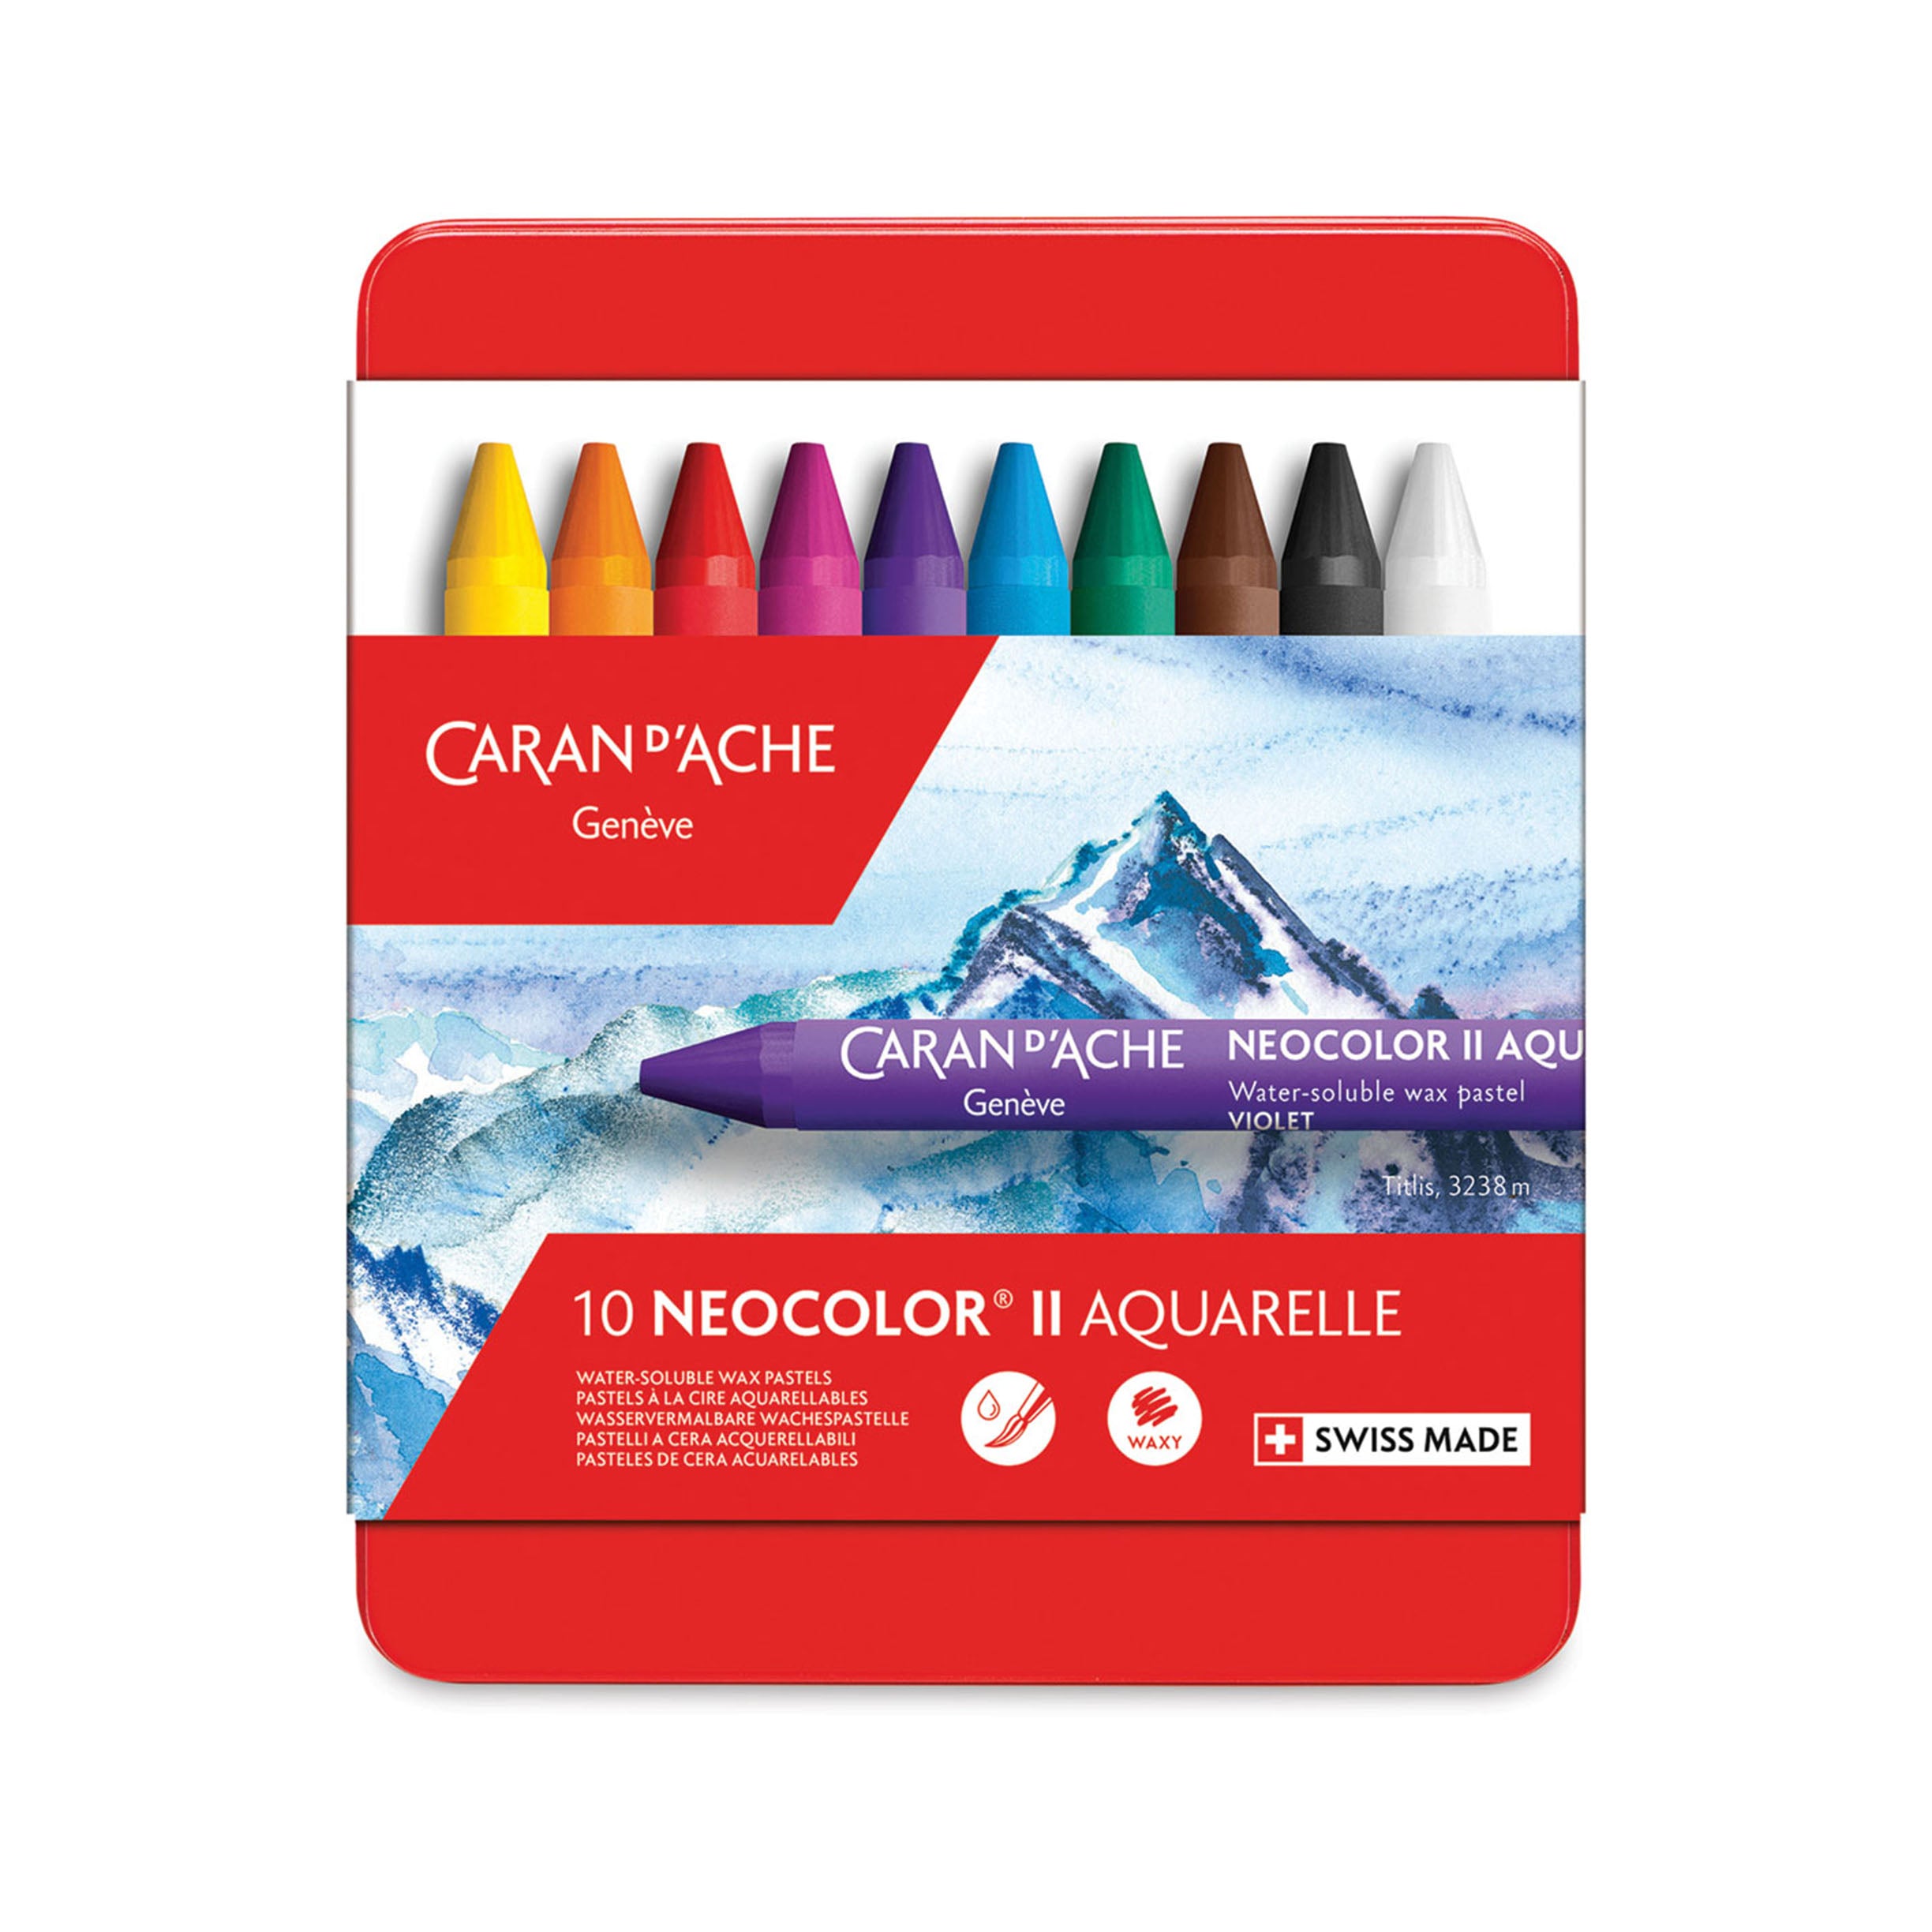 Caran d’Ache Neocolor II Aquarelle Artists’ Pastels, Set of 10